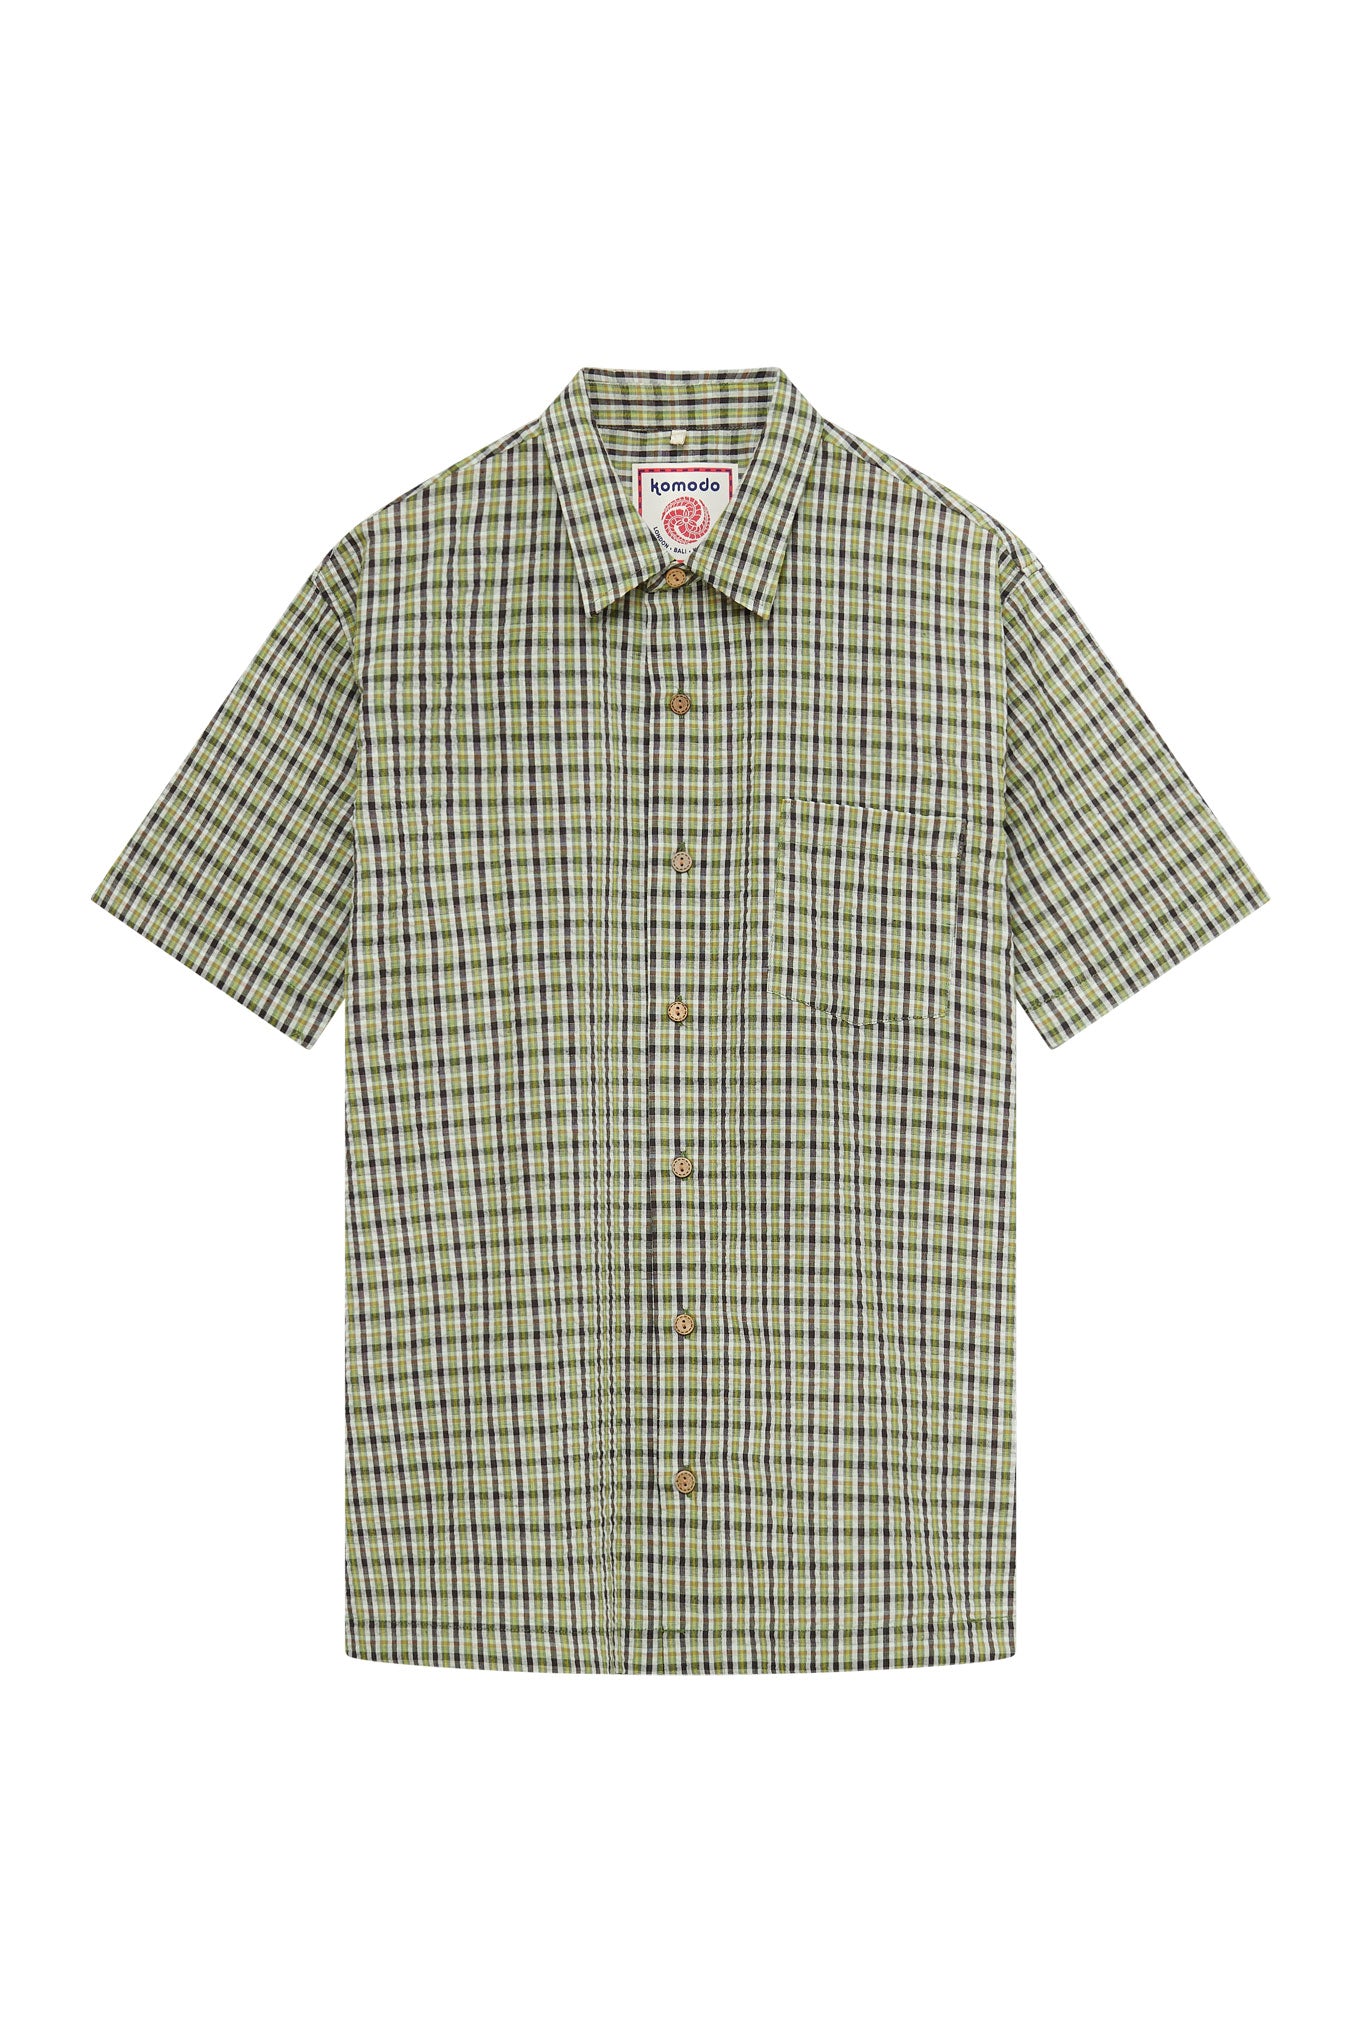 CASPAR Organic Cotton Men's Shirt - Summer Check